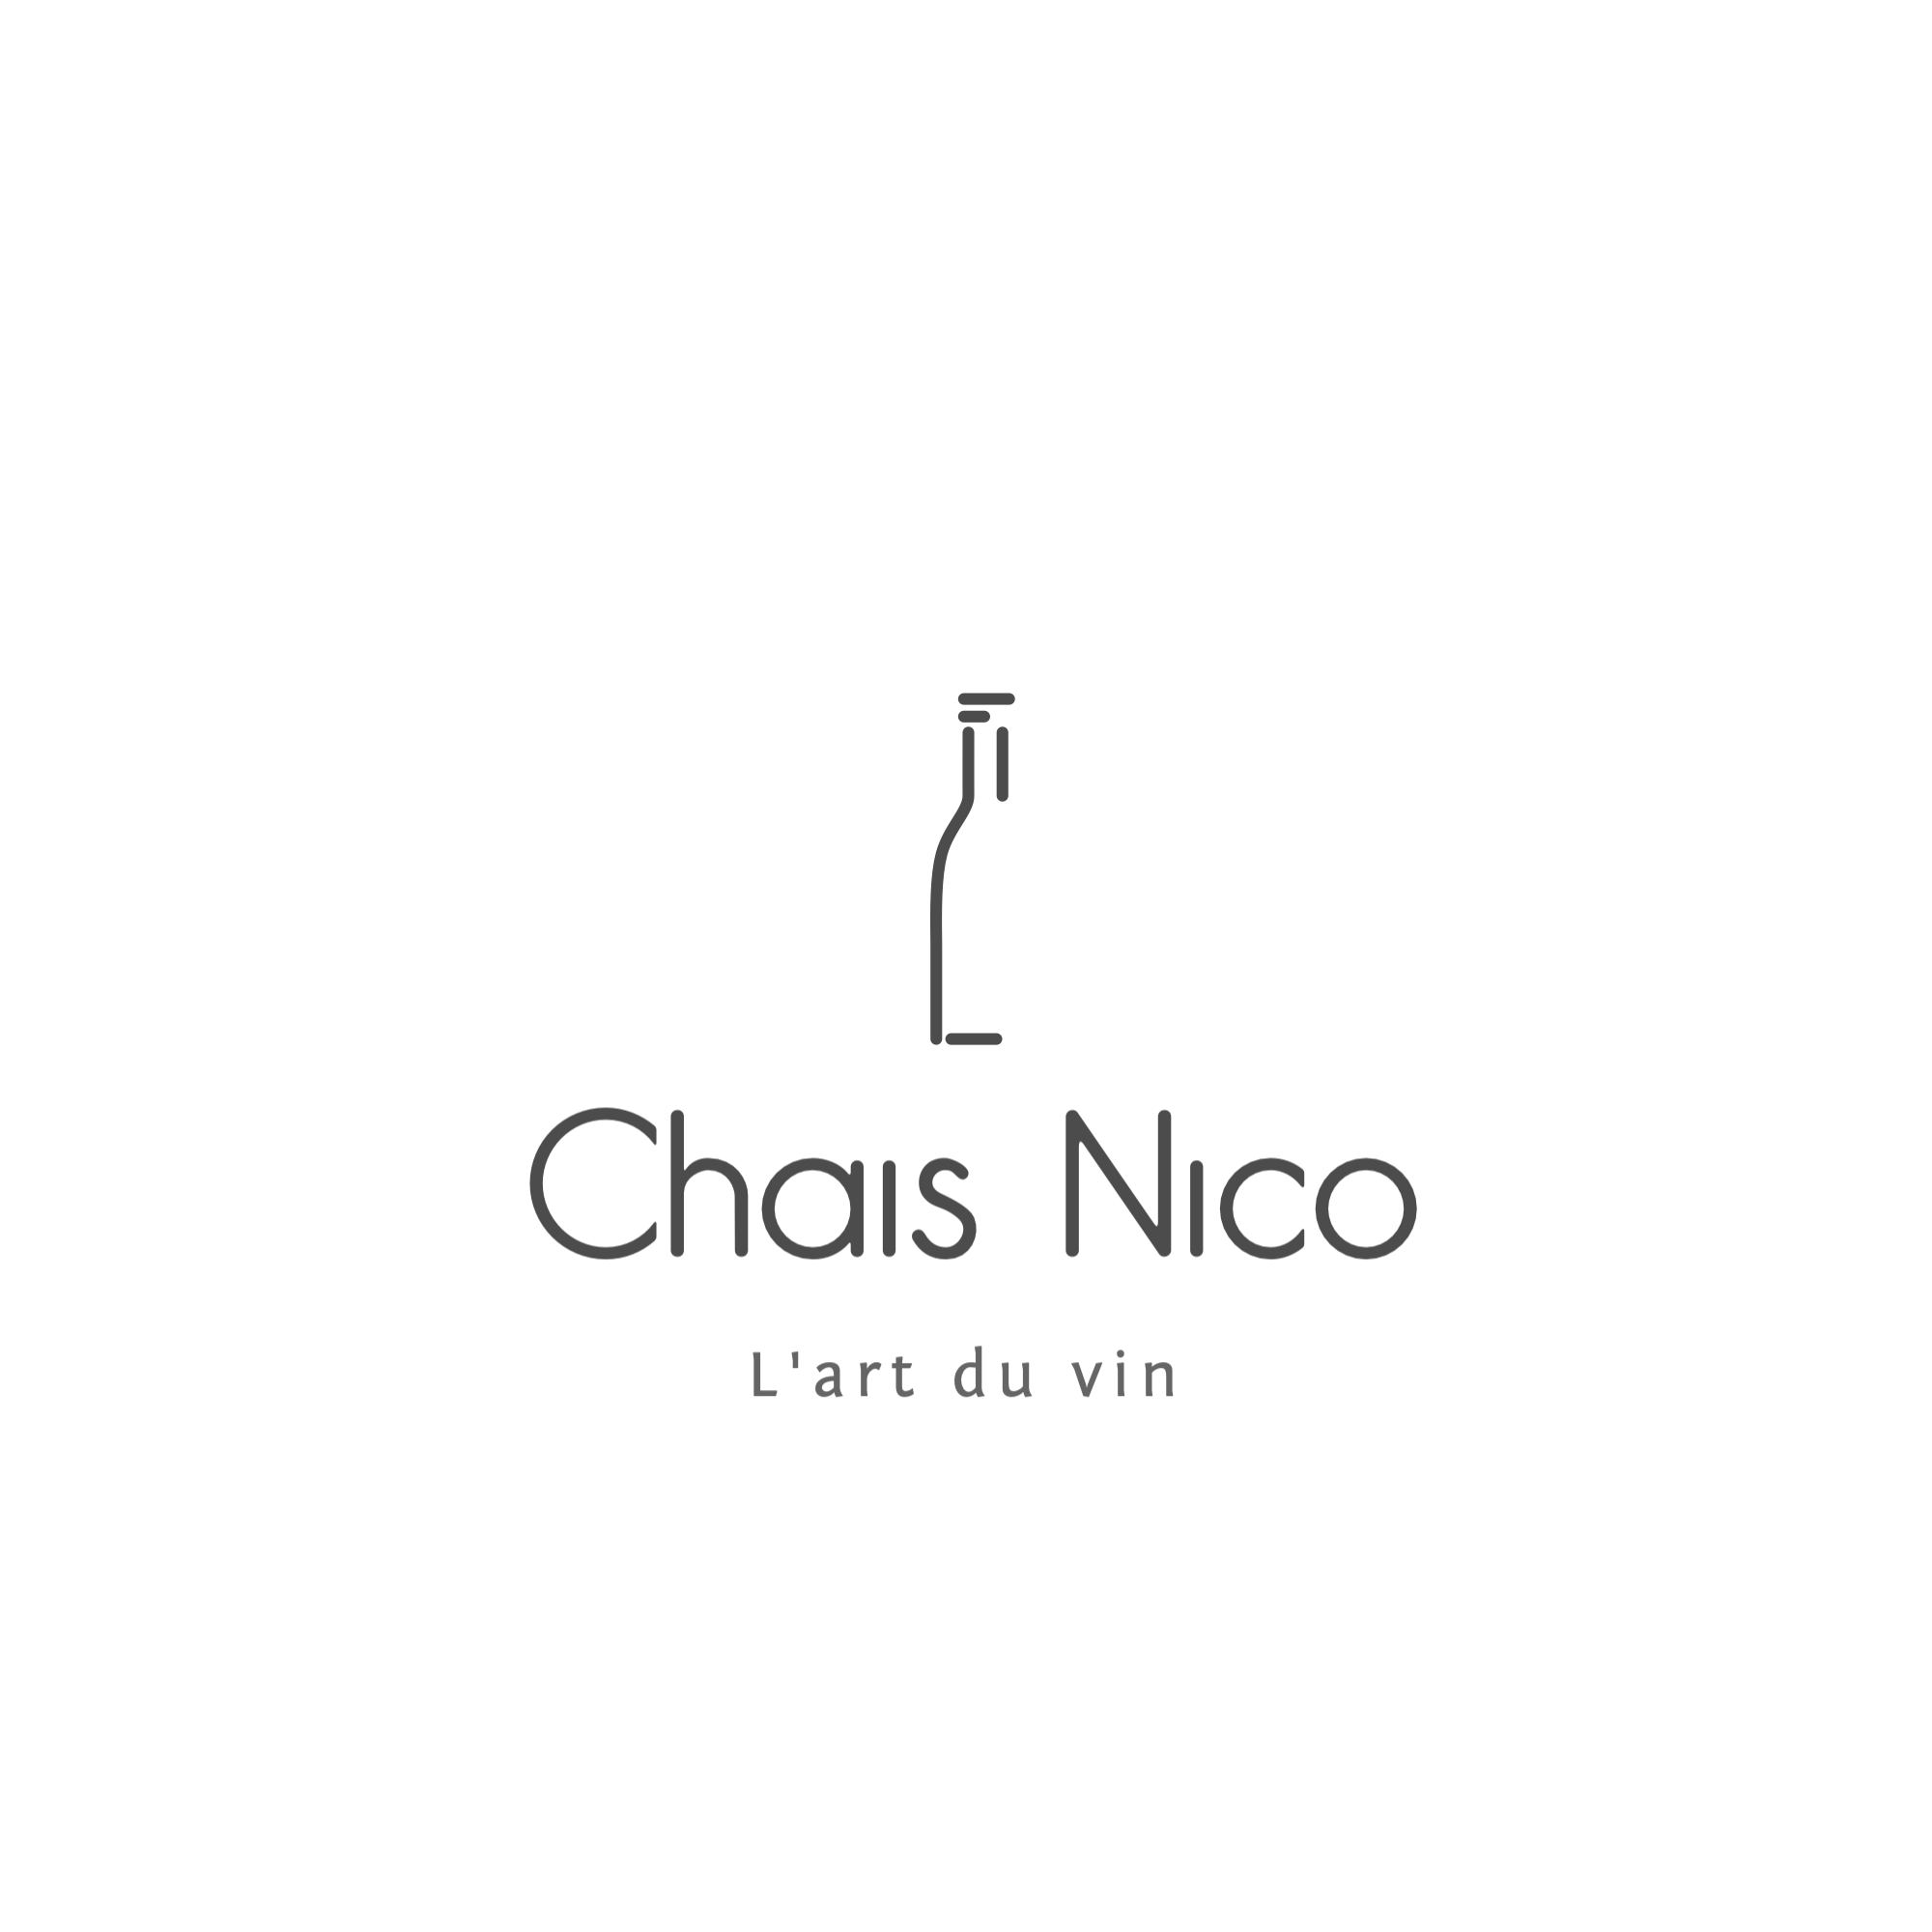 Chais Nico